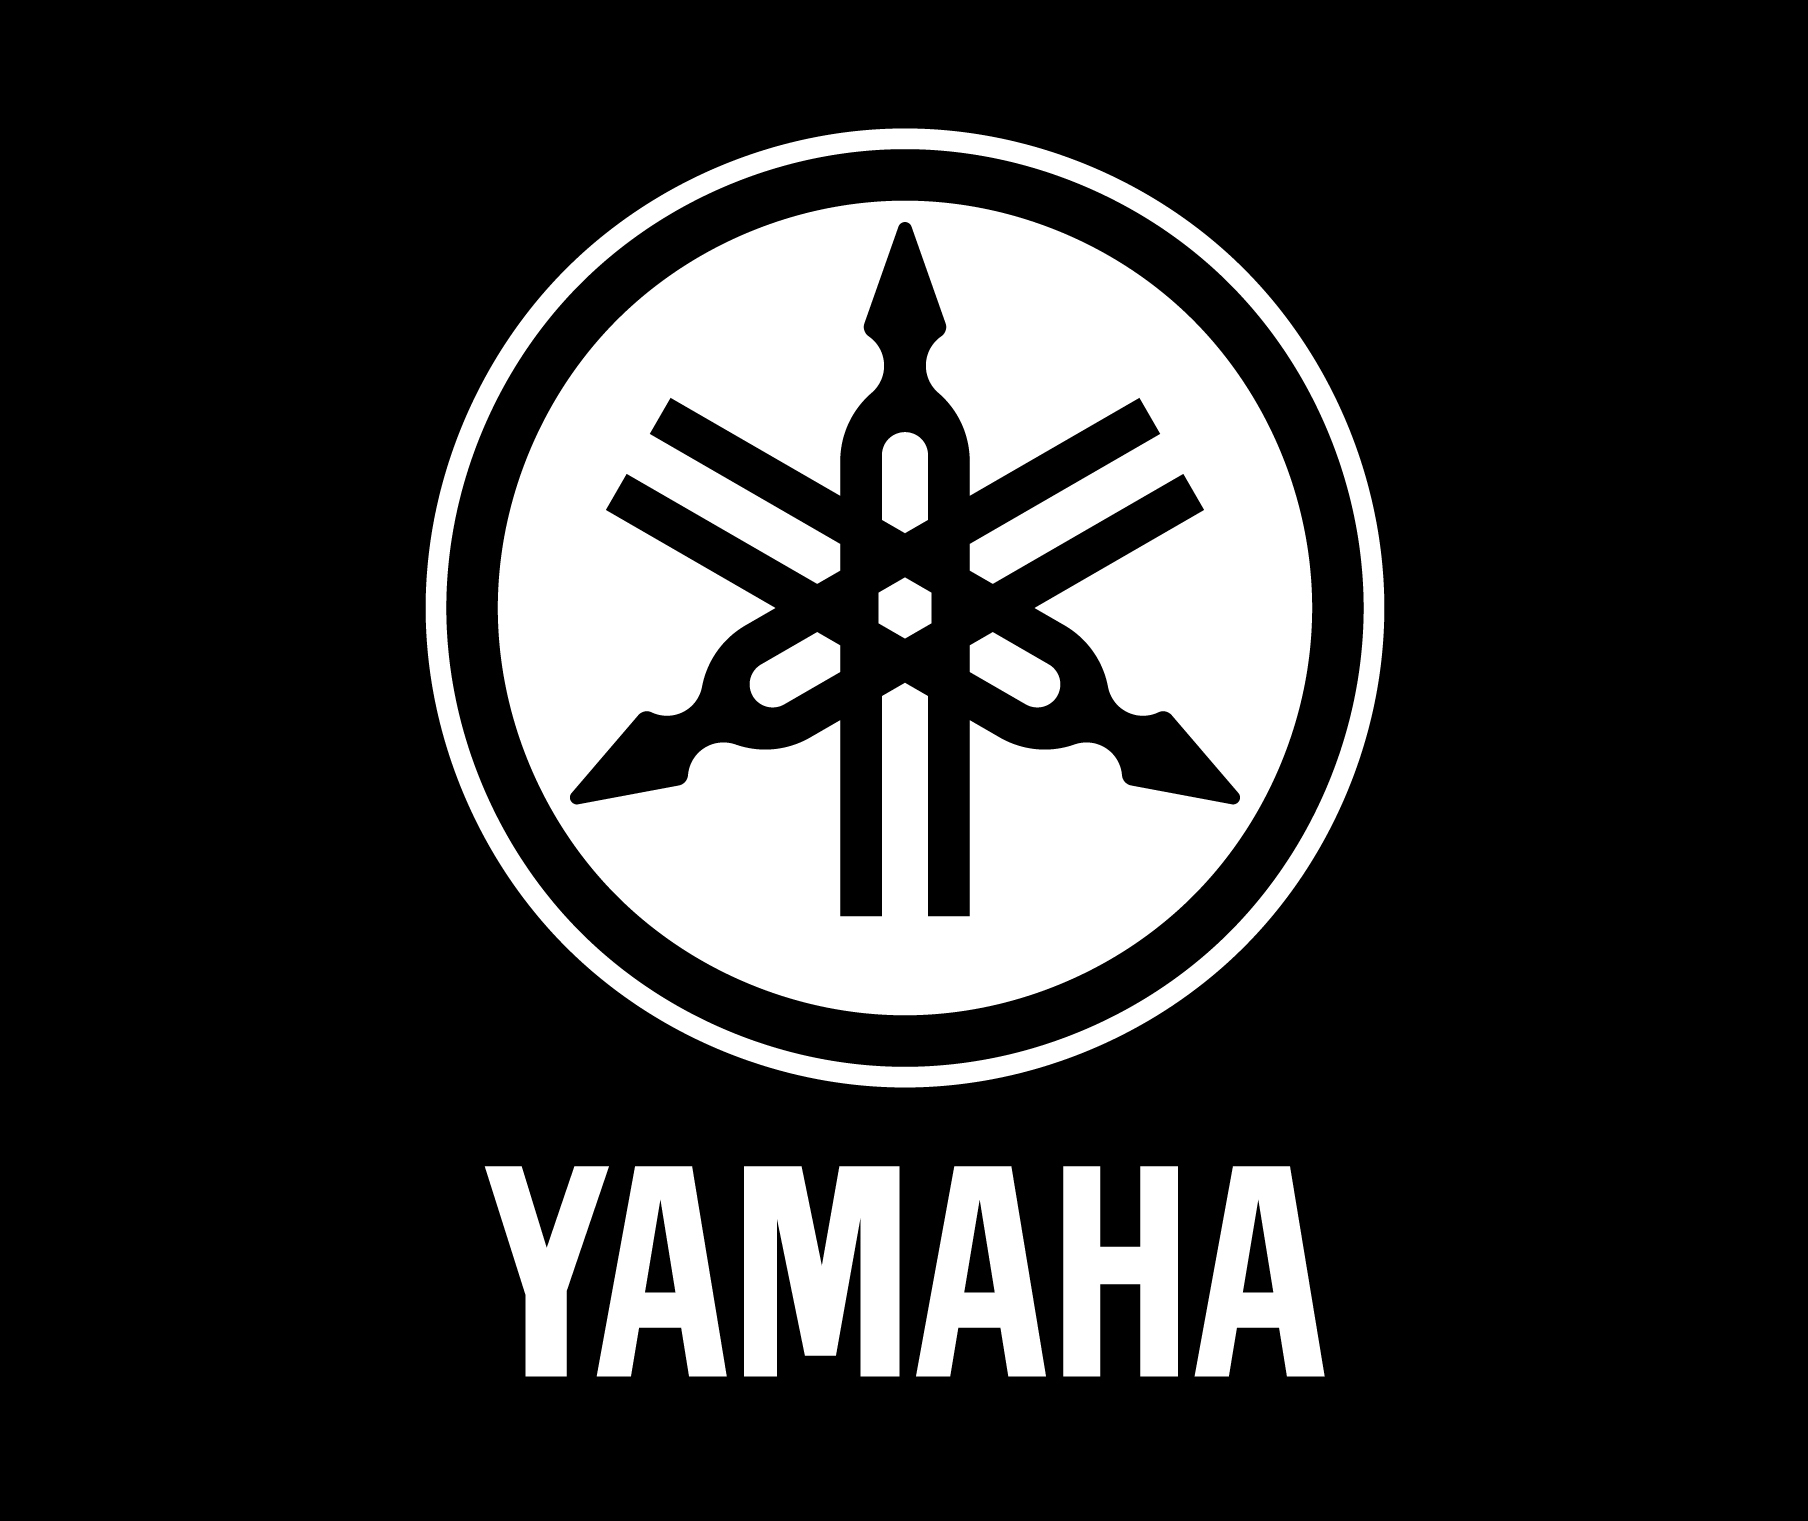 Популярные заставки и фоны Ямаха (Yamaha) на компьютер